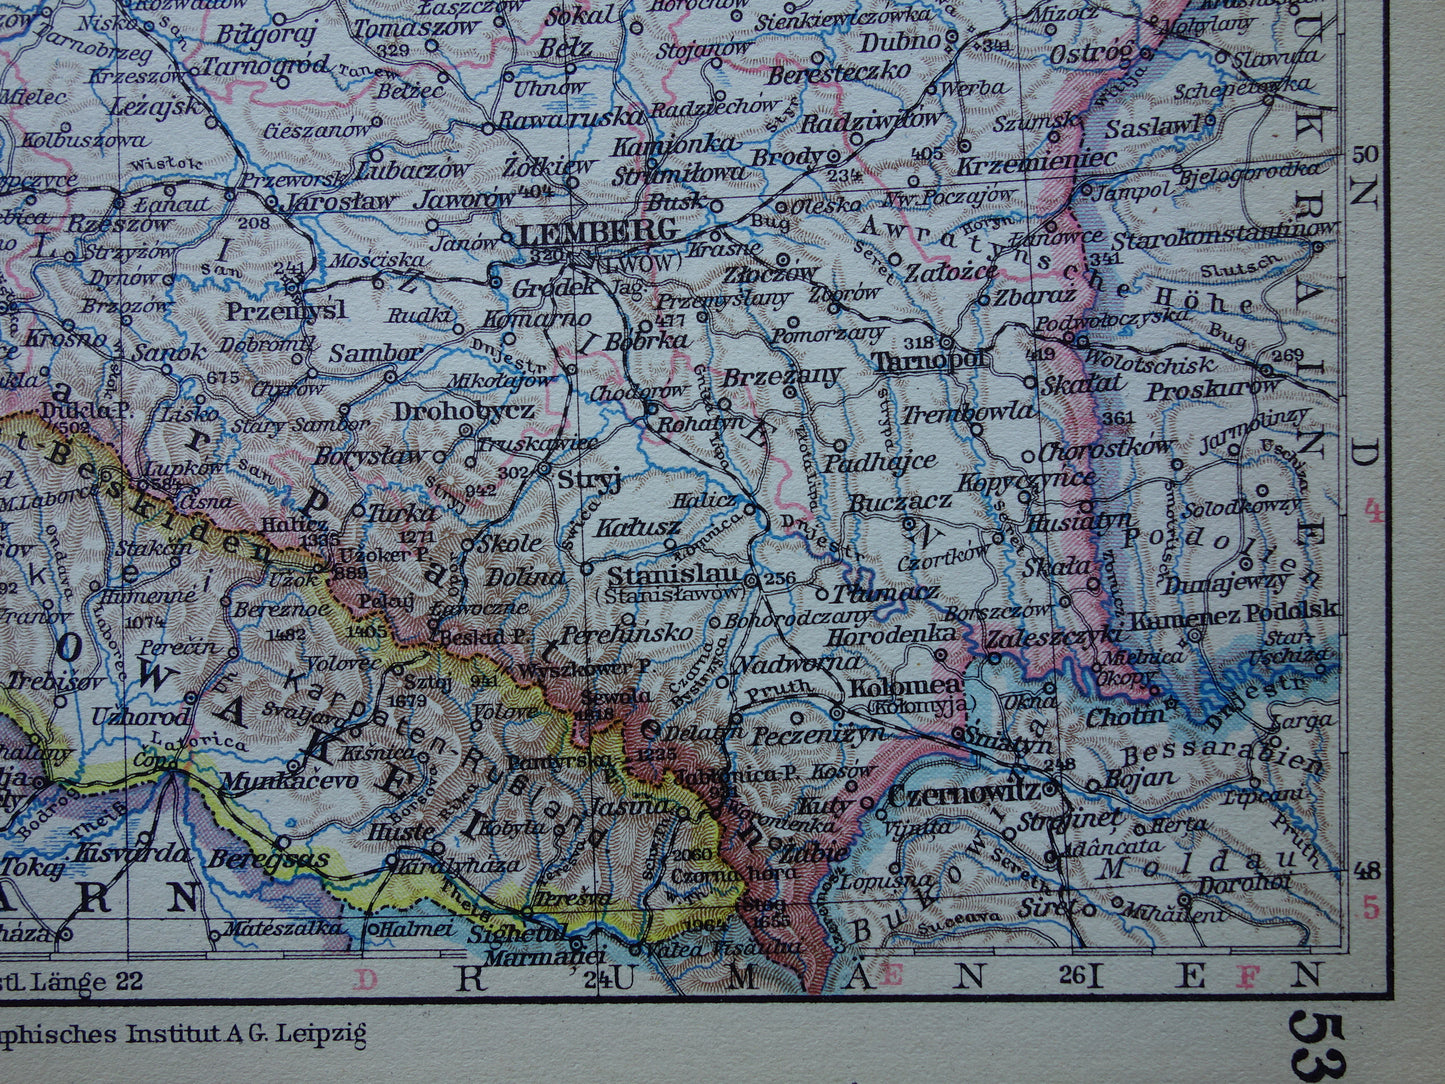 POLEN oude landkaart van Polen uit het jaar 1931 origineel vintage kaart print Polen historische kaarten